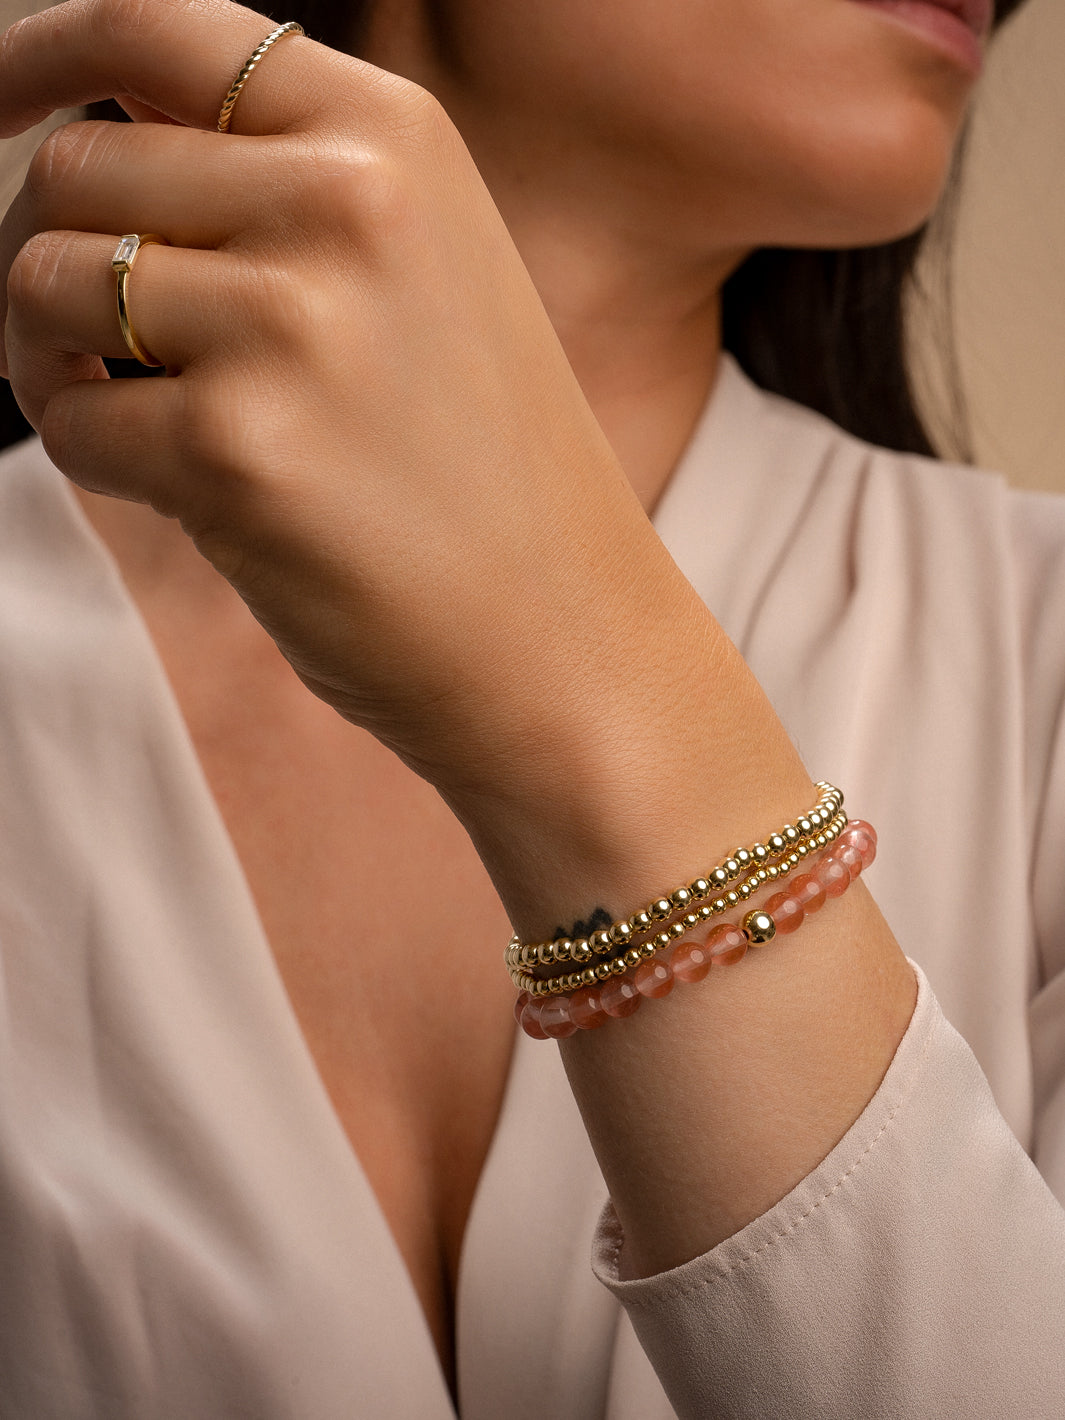 Ronde cherry quartz kralen met gouden kralen sparkling jewels sieraad armband #kleur_goud